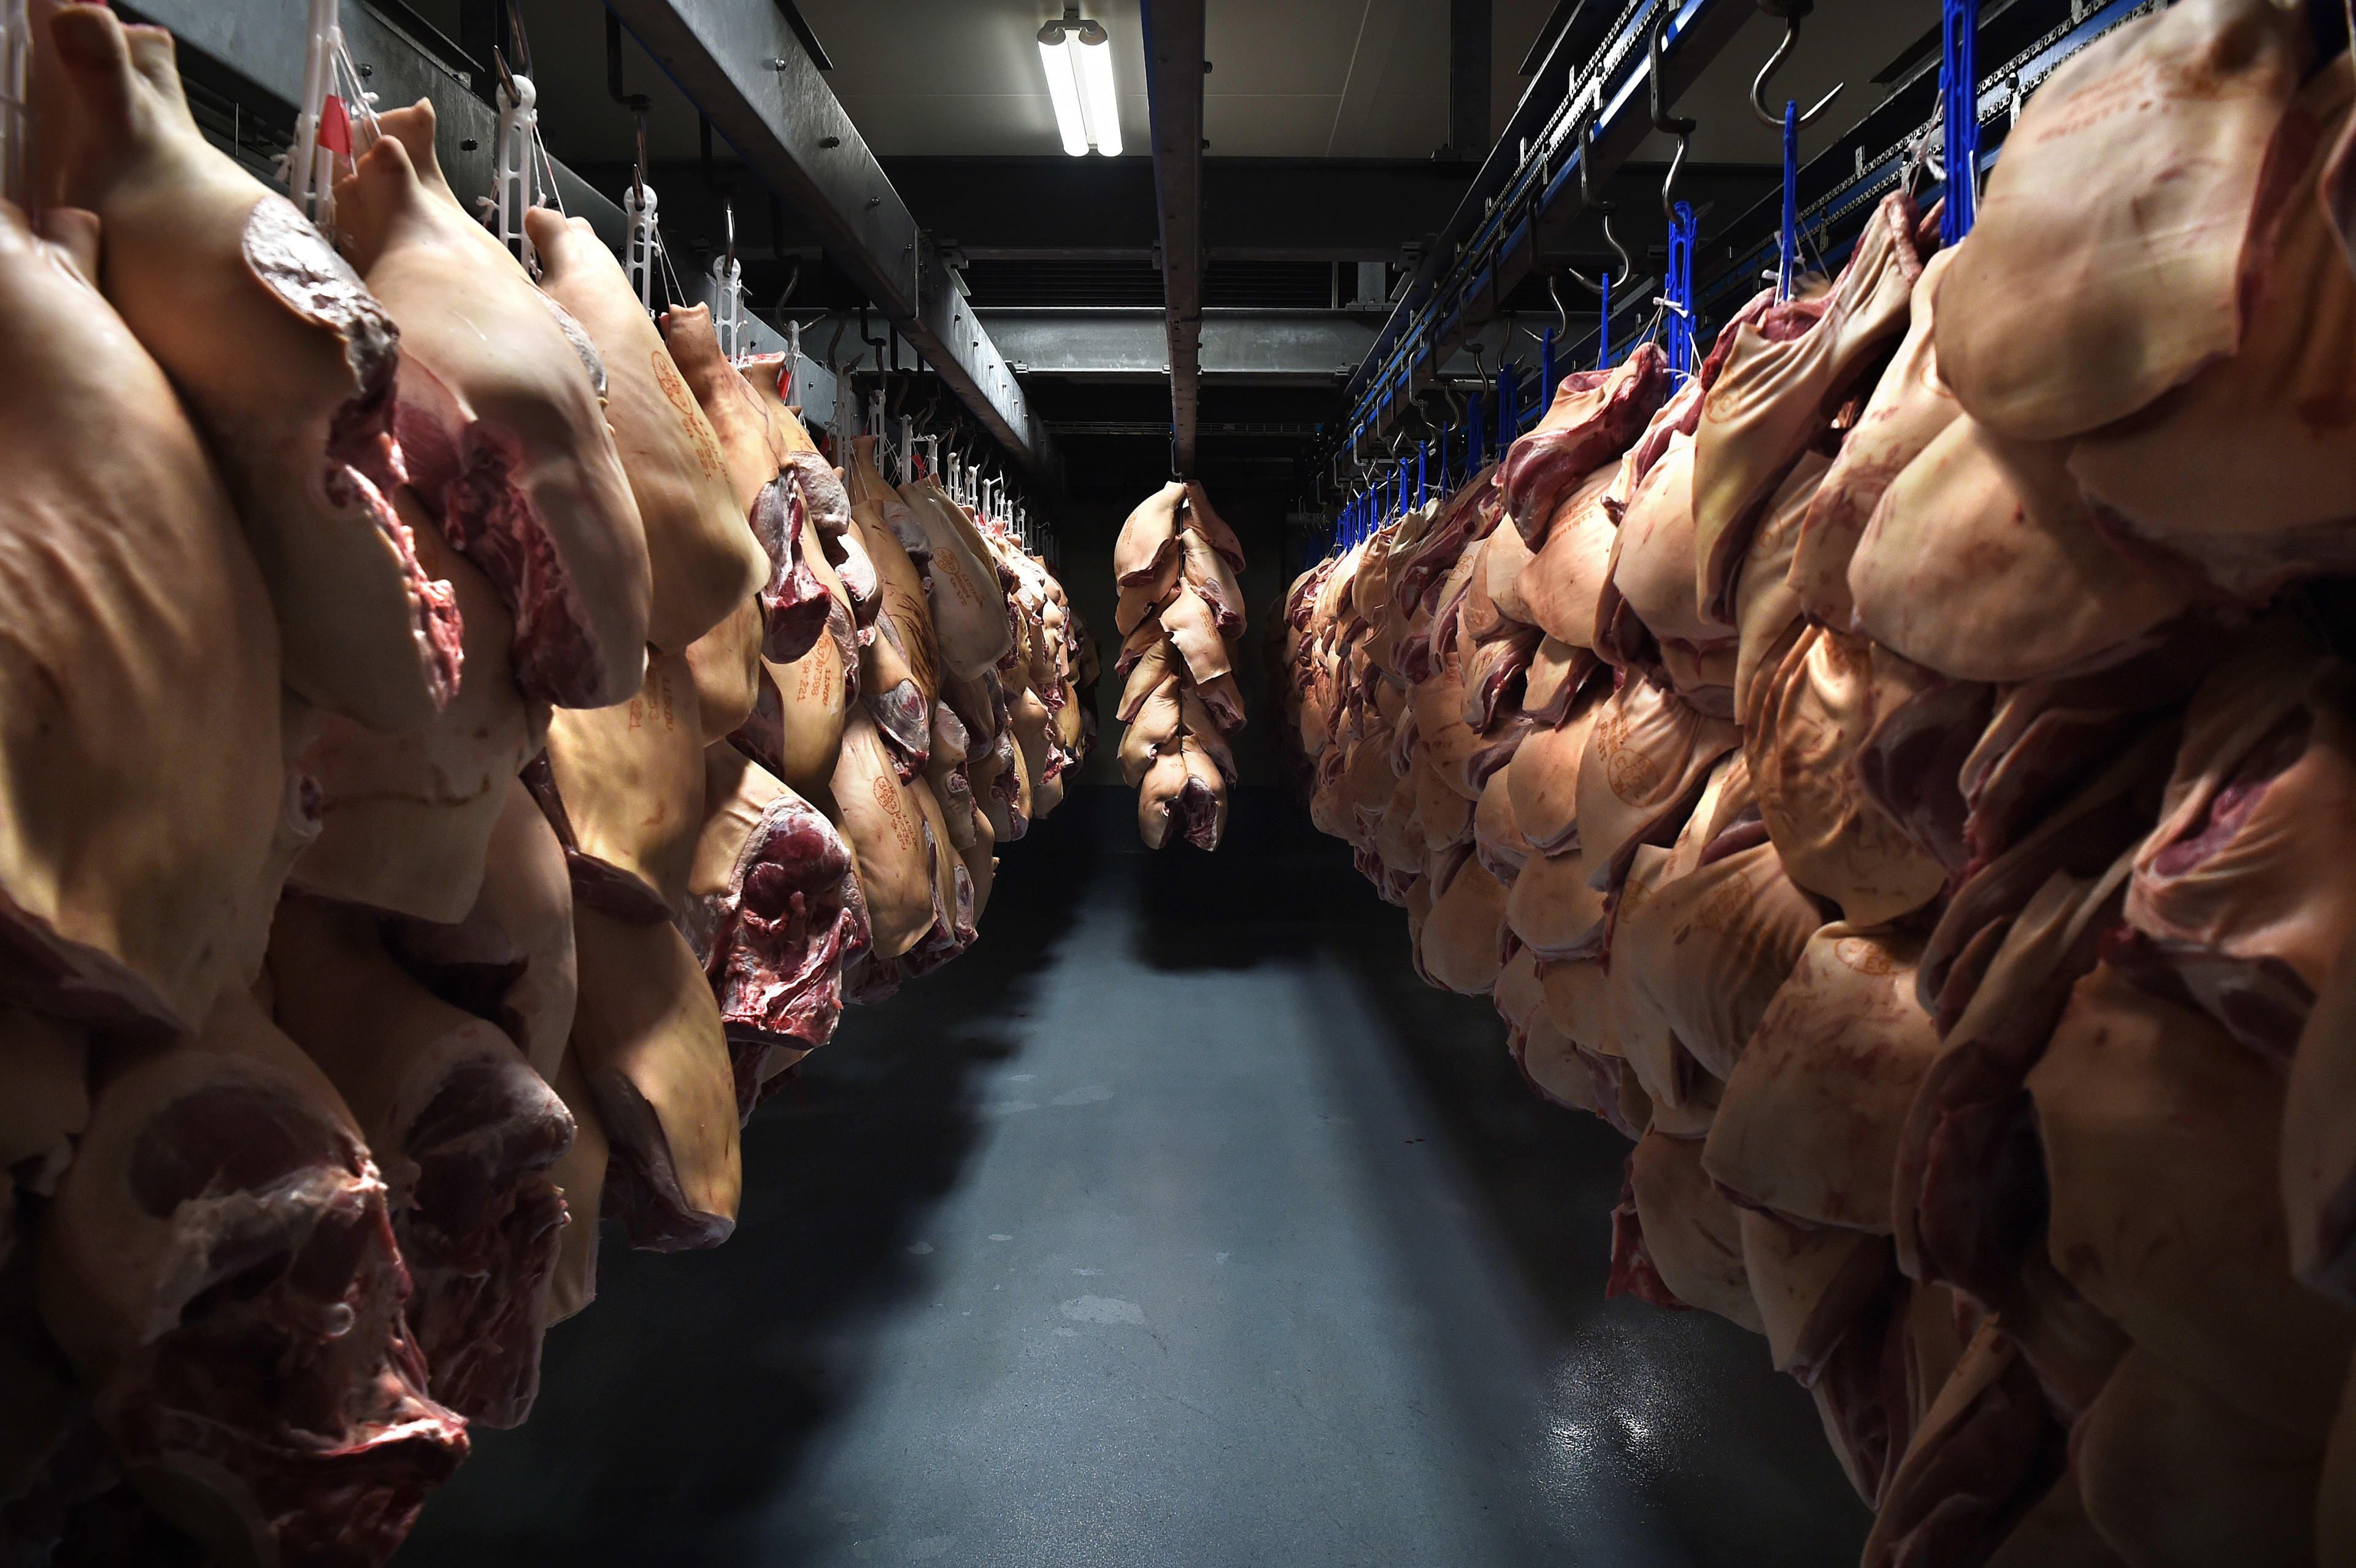 Vrachtwagen verliest duizenden kilo's varkensvlees door gescheurde trailer